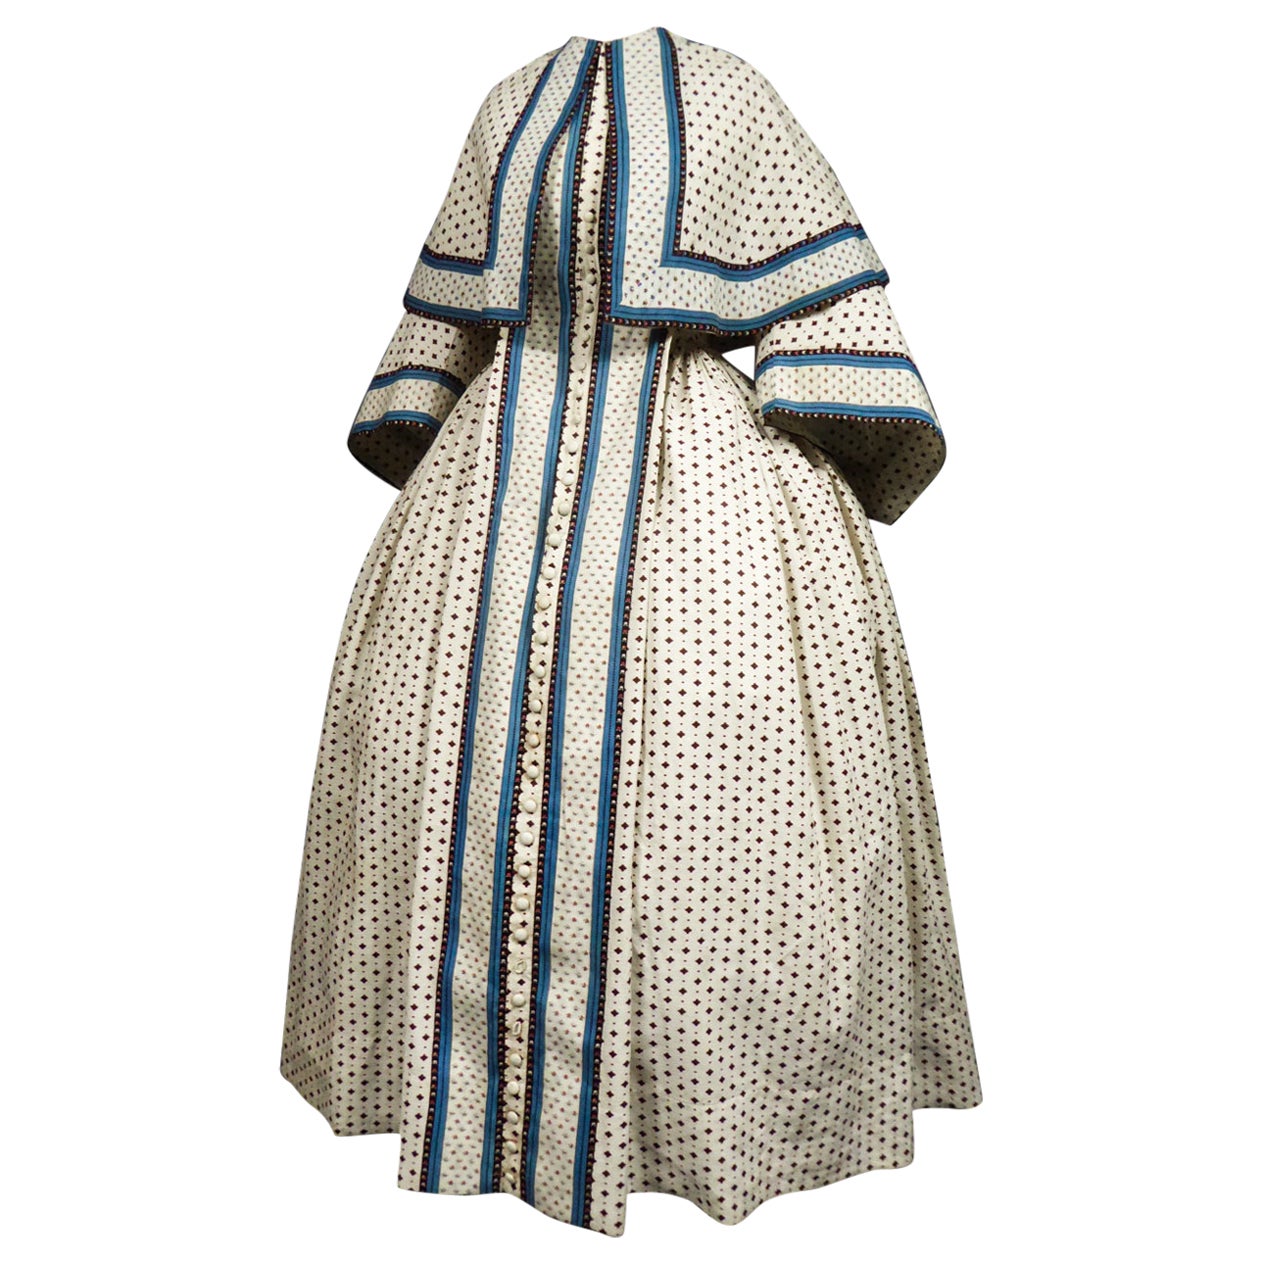 A Printed Cotton Crinoline Day Dress - France Napoleon III Period Circa 1865